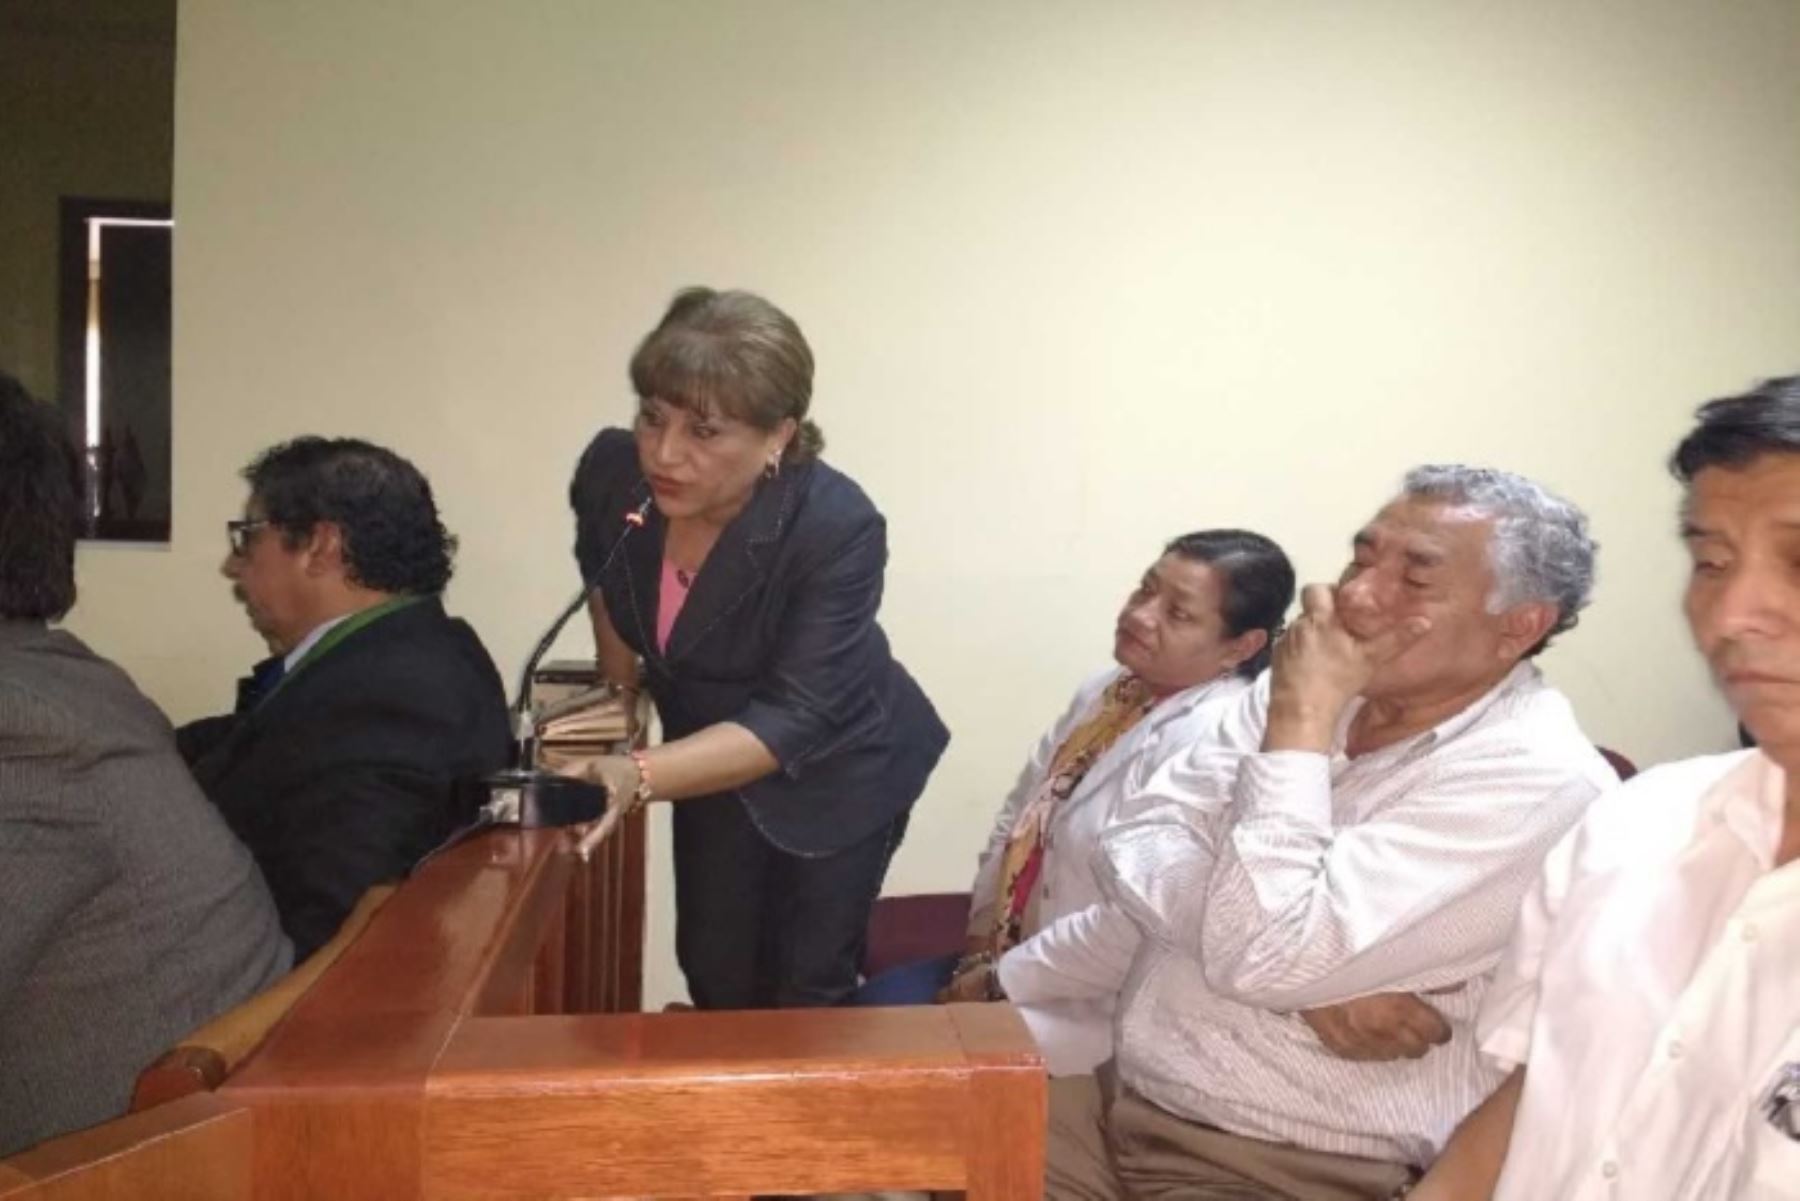 Por unanimidad los jueces de la Primera Sala de Apelaciones de la Corte Superior de Justicia del Santa, confirmaron esta tarde la condena de 4 años de cárcel para los prófugos exalcaldes de Chimbote, Victoria Espinoza García y Julio Cortez Rojas.